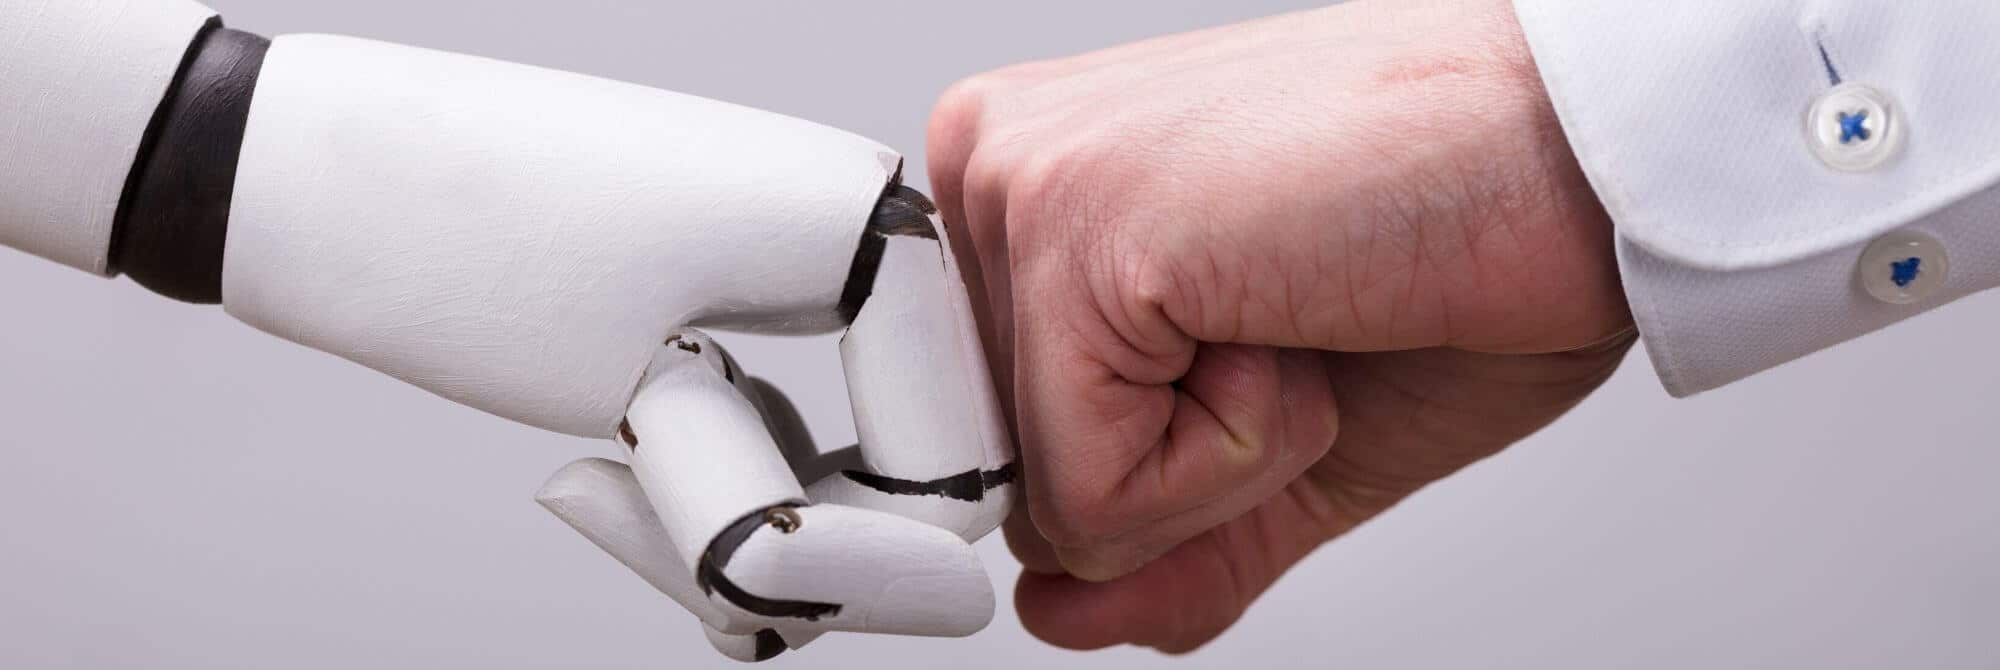 דיגיטל בוסטאיך רובוט האינסטגרם שלנו יכול לעזור לכם להצליח